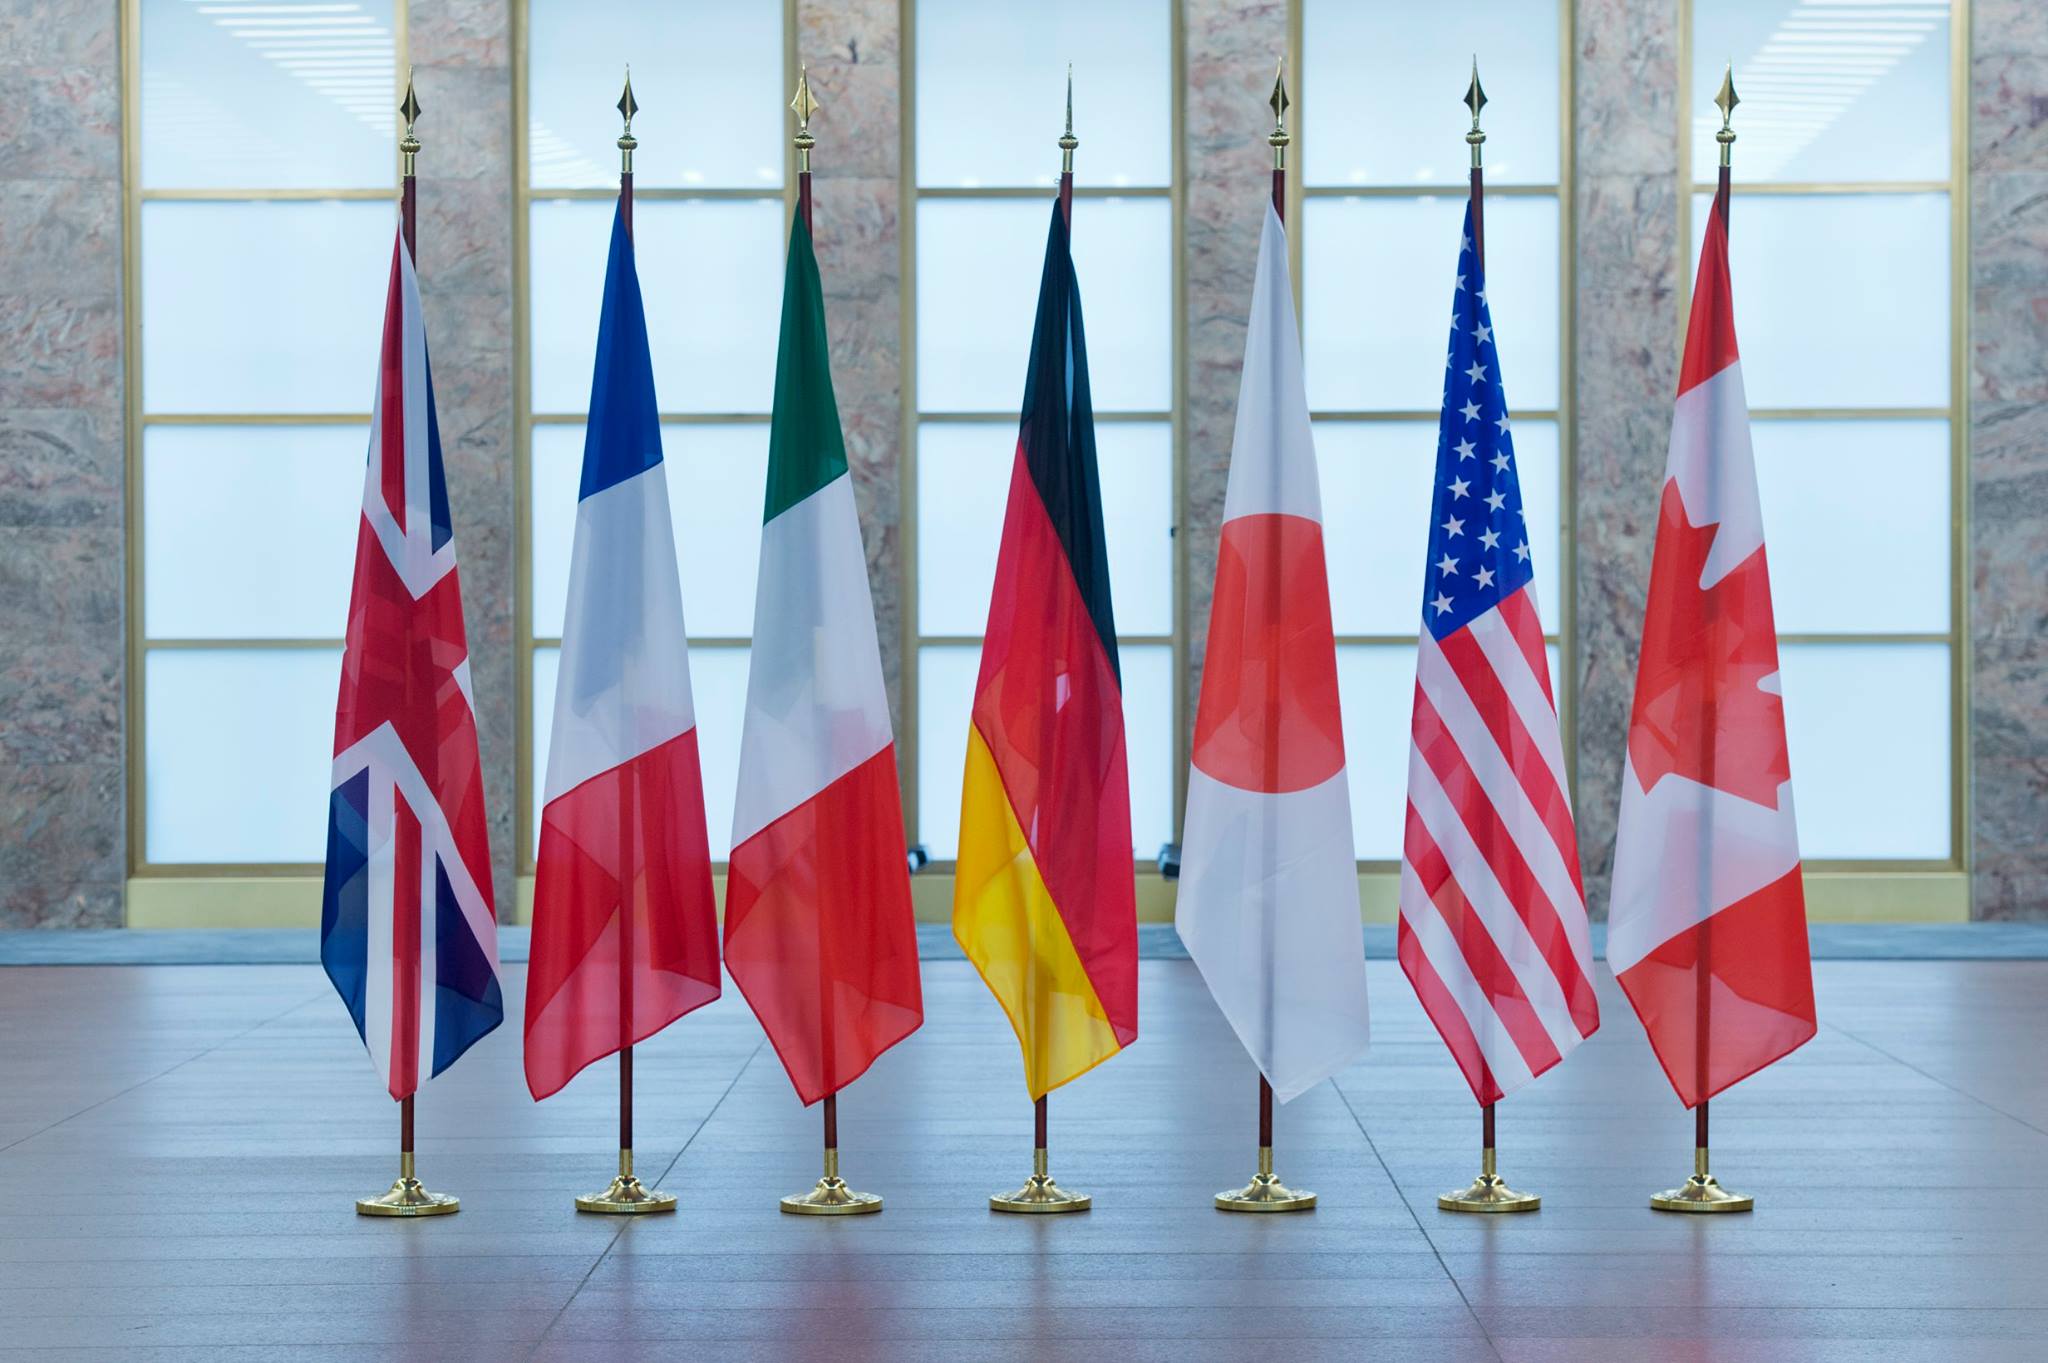 Теракт в Манчестере станет одной из тем саммита G7 в Италии